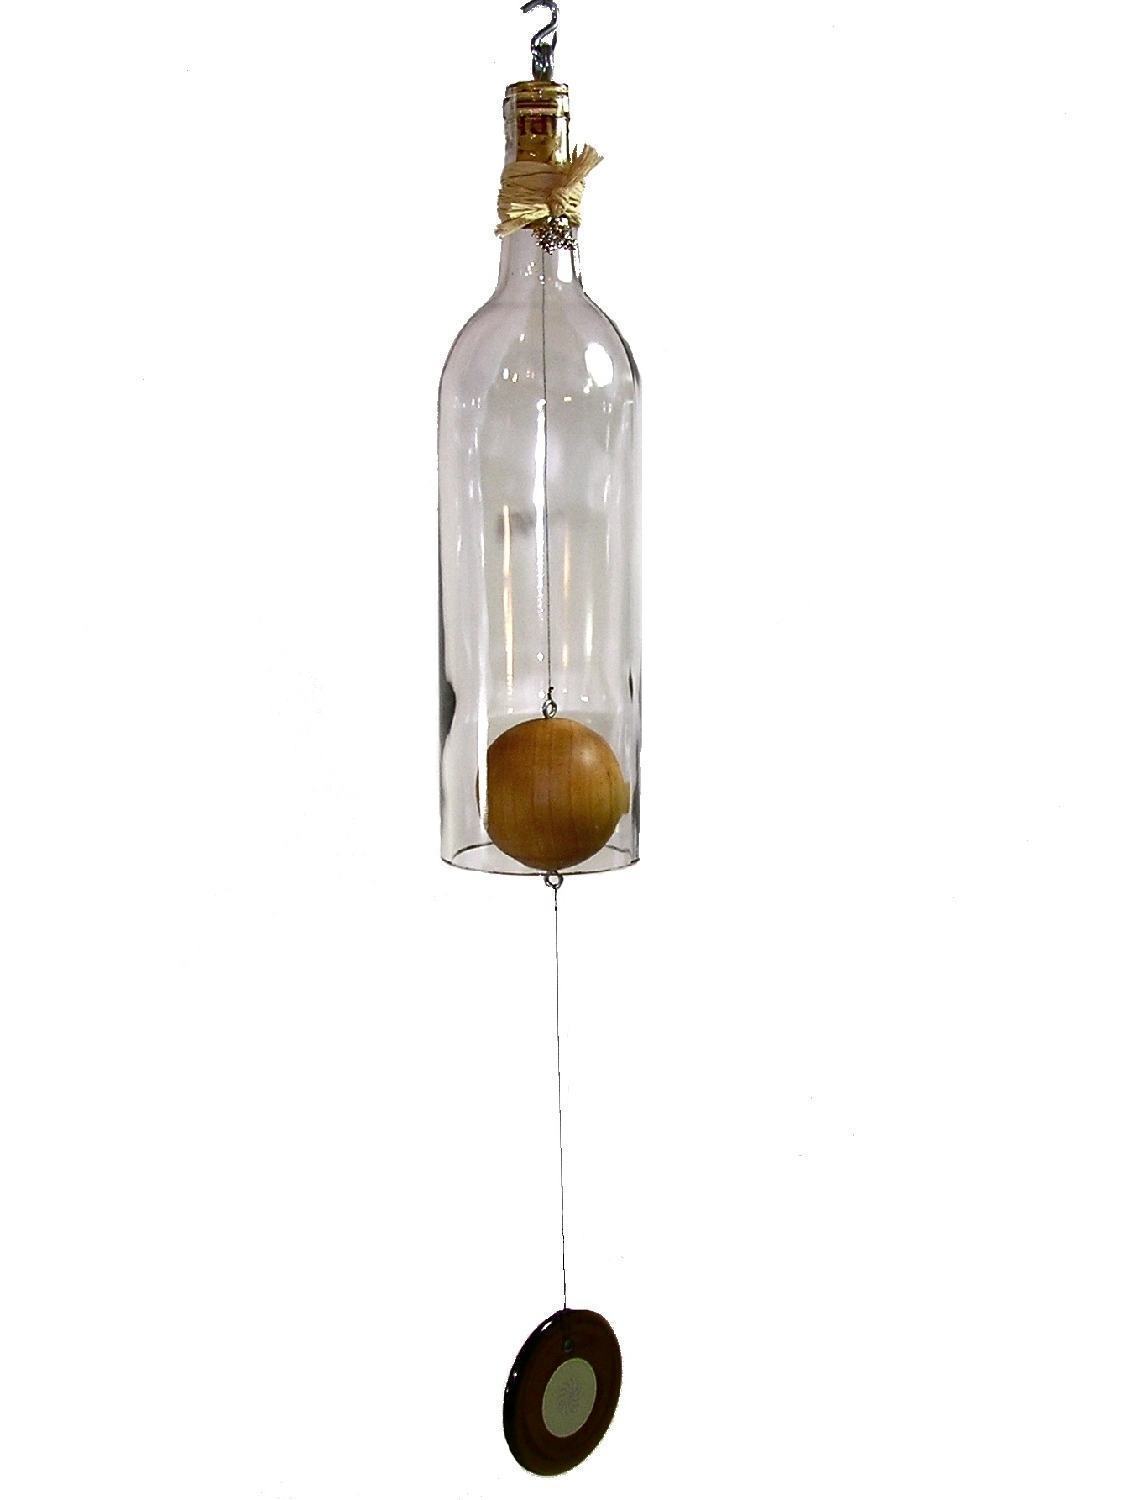 Penduricalho fait avec une bouteille transparente.